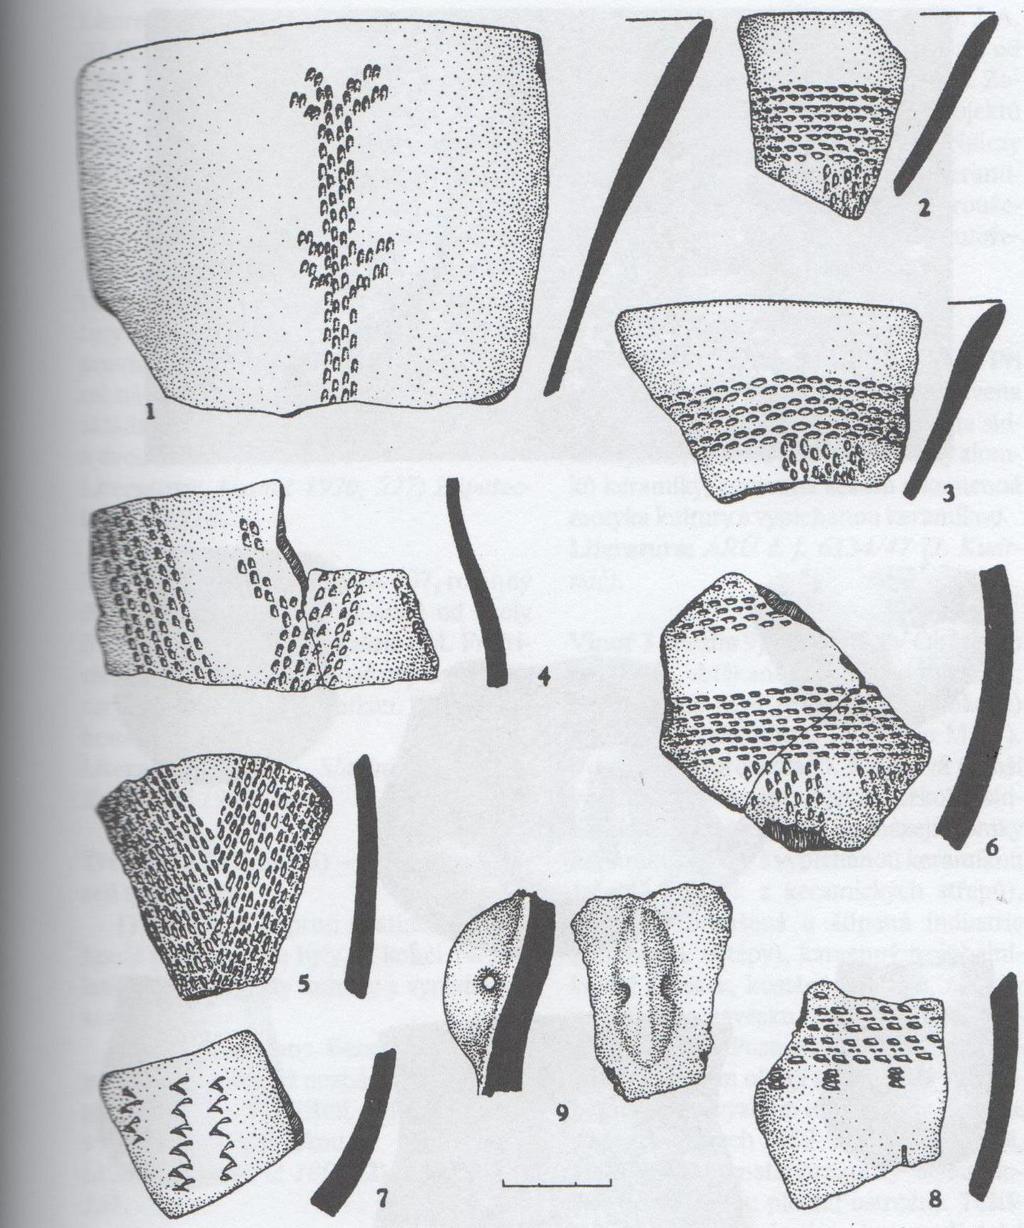 57 Obrazová příloha 8: Nálezy mladší vypíchané keramiky z Ruzyně ppč. 589. (Richterová, J.